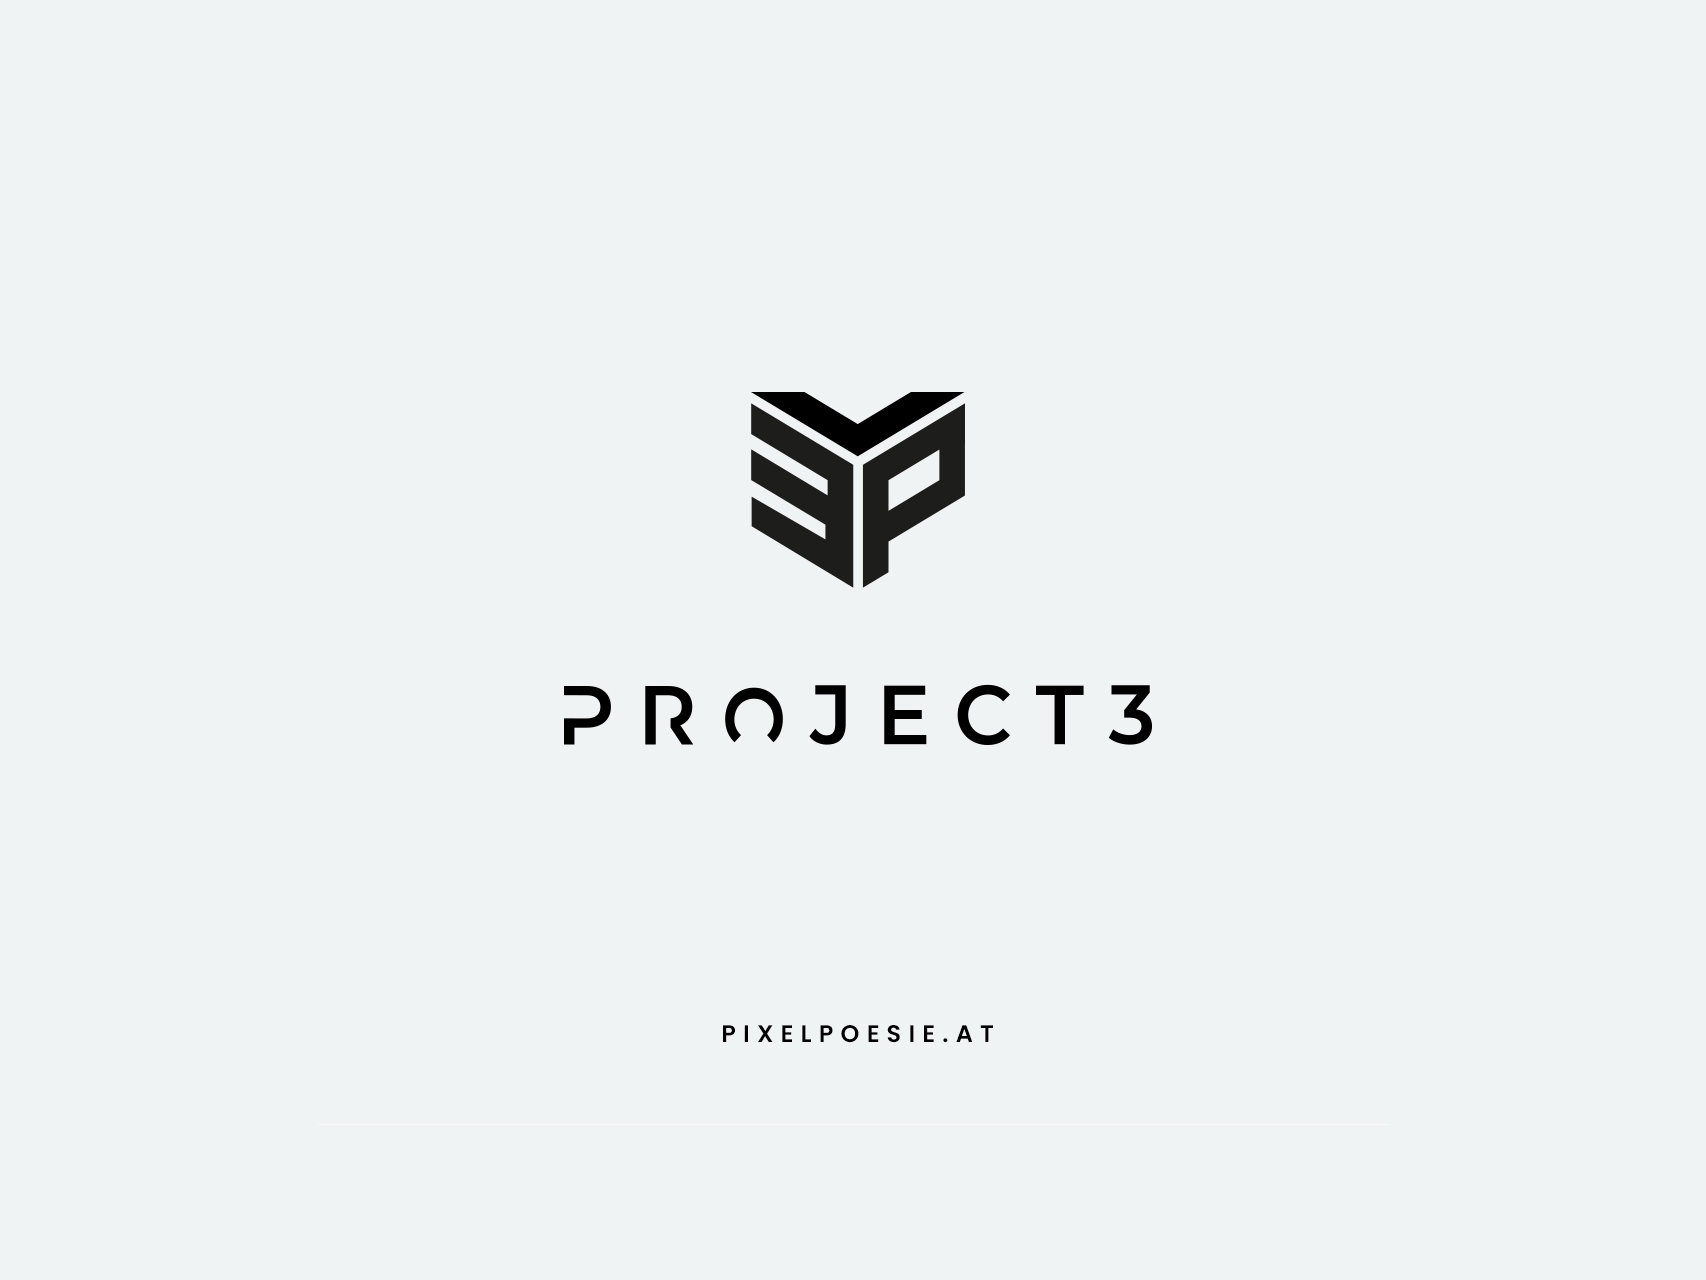 Logodesign_Project3_Pixelpoesie